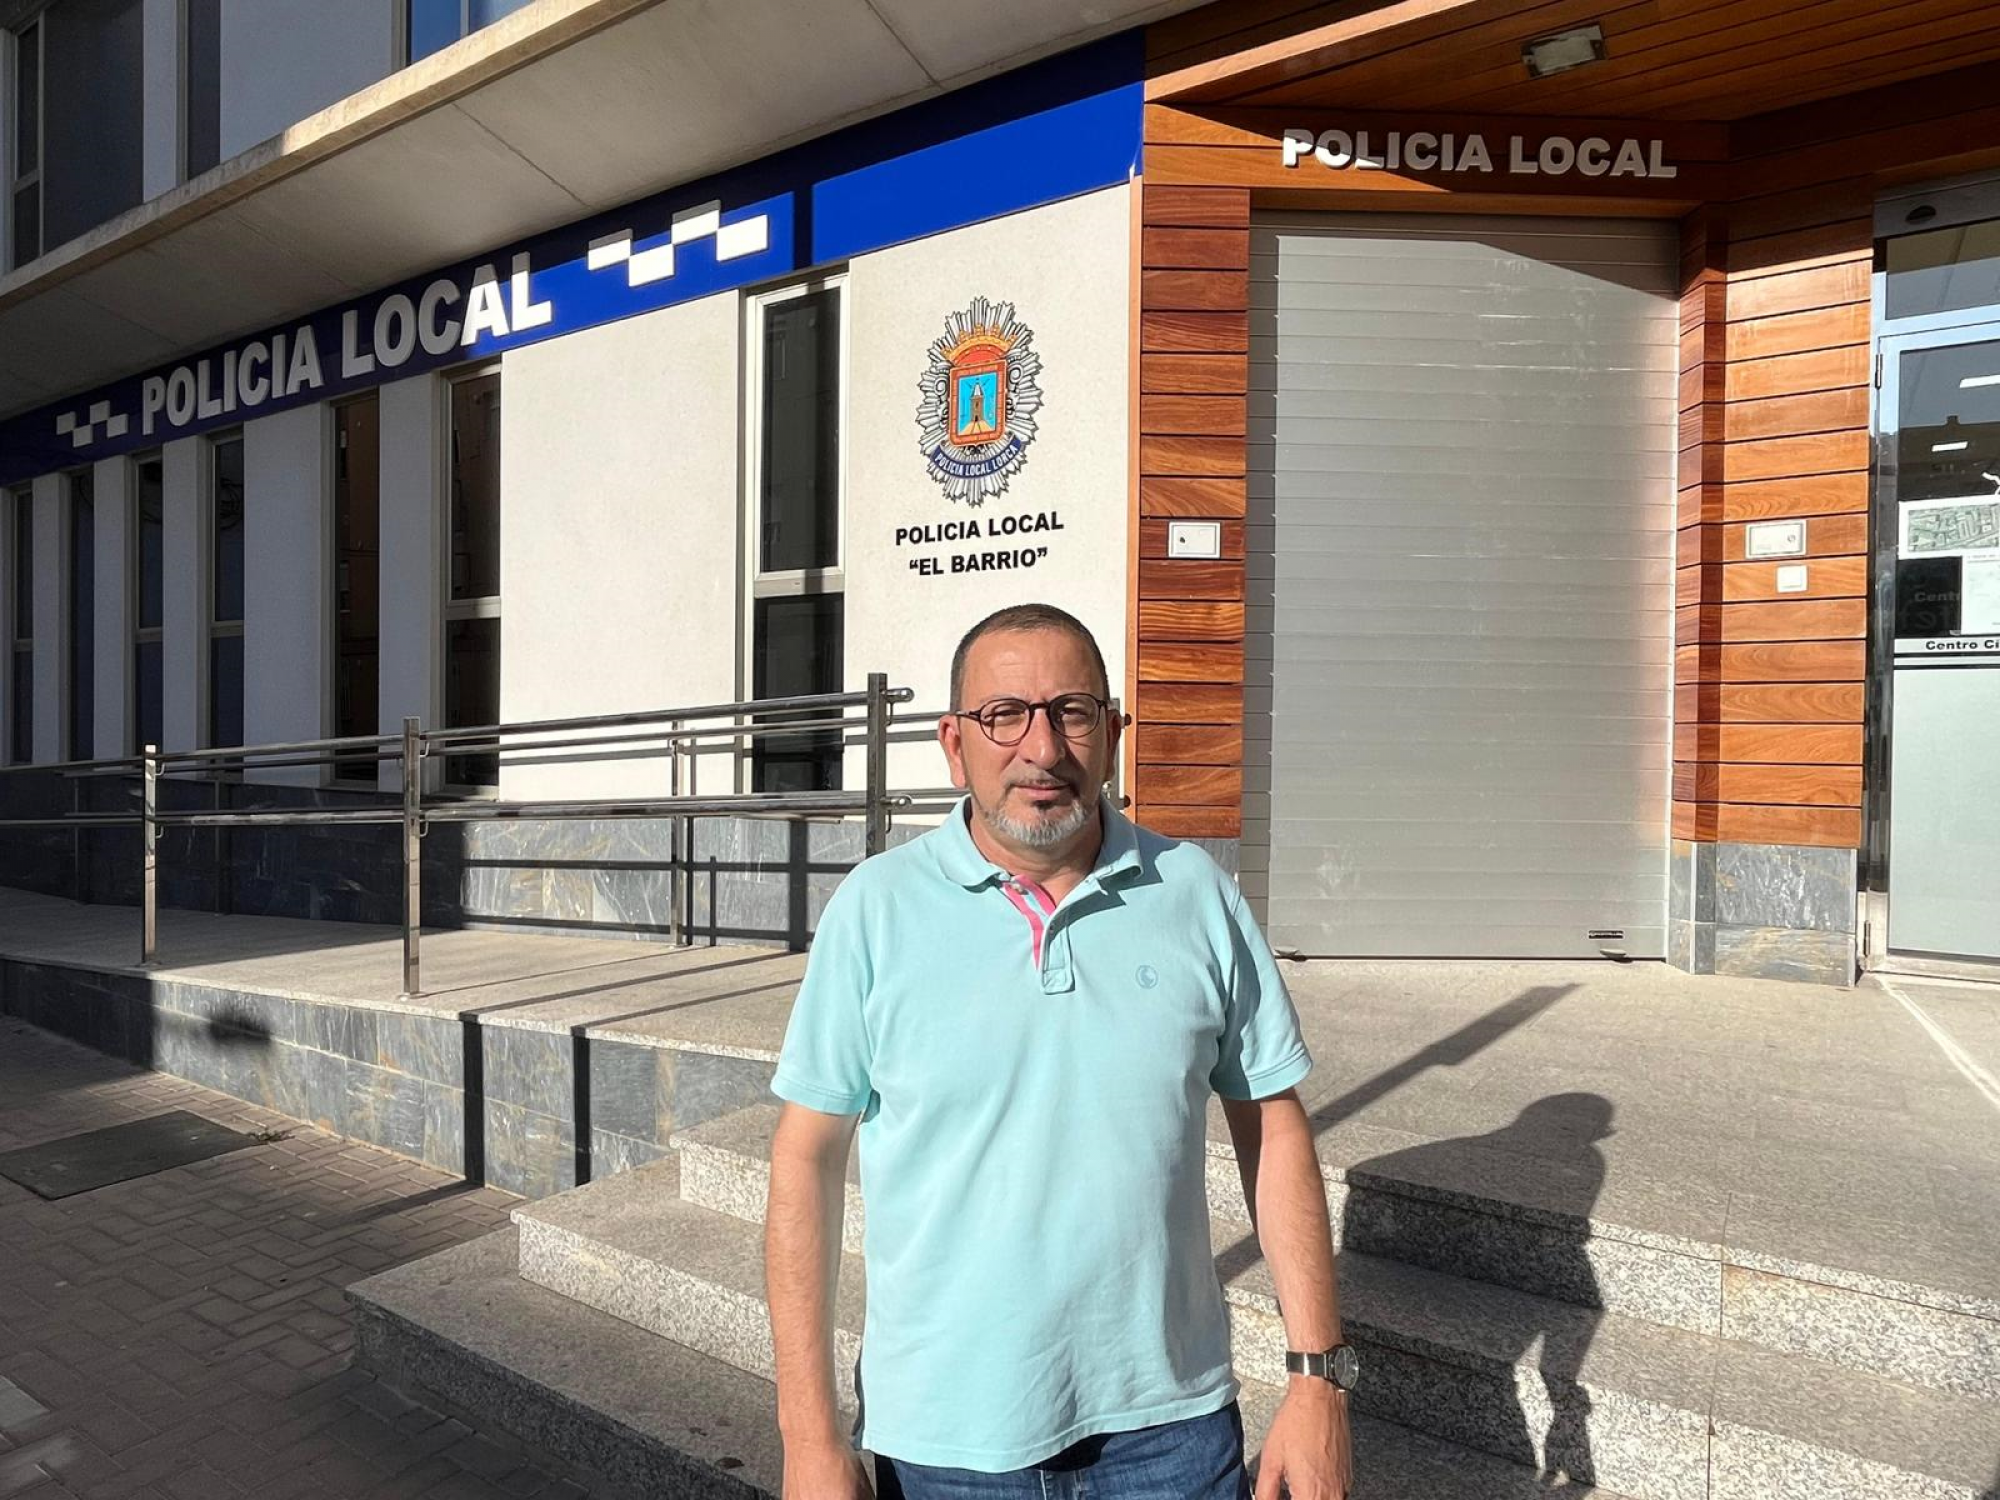 PSOE LORCA:'Fulgencio Gil cierra el cuartel de la Policía Local de San Cristóbal dando la espalda a más de 12.500 vecinos y vecinas de Lorca'